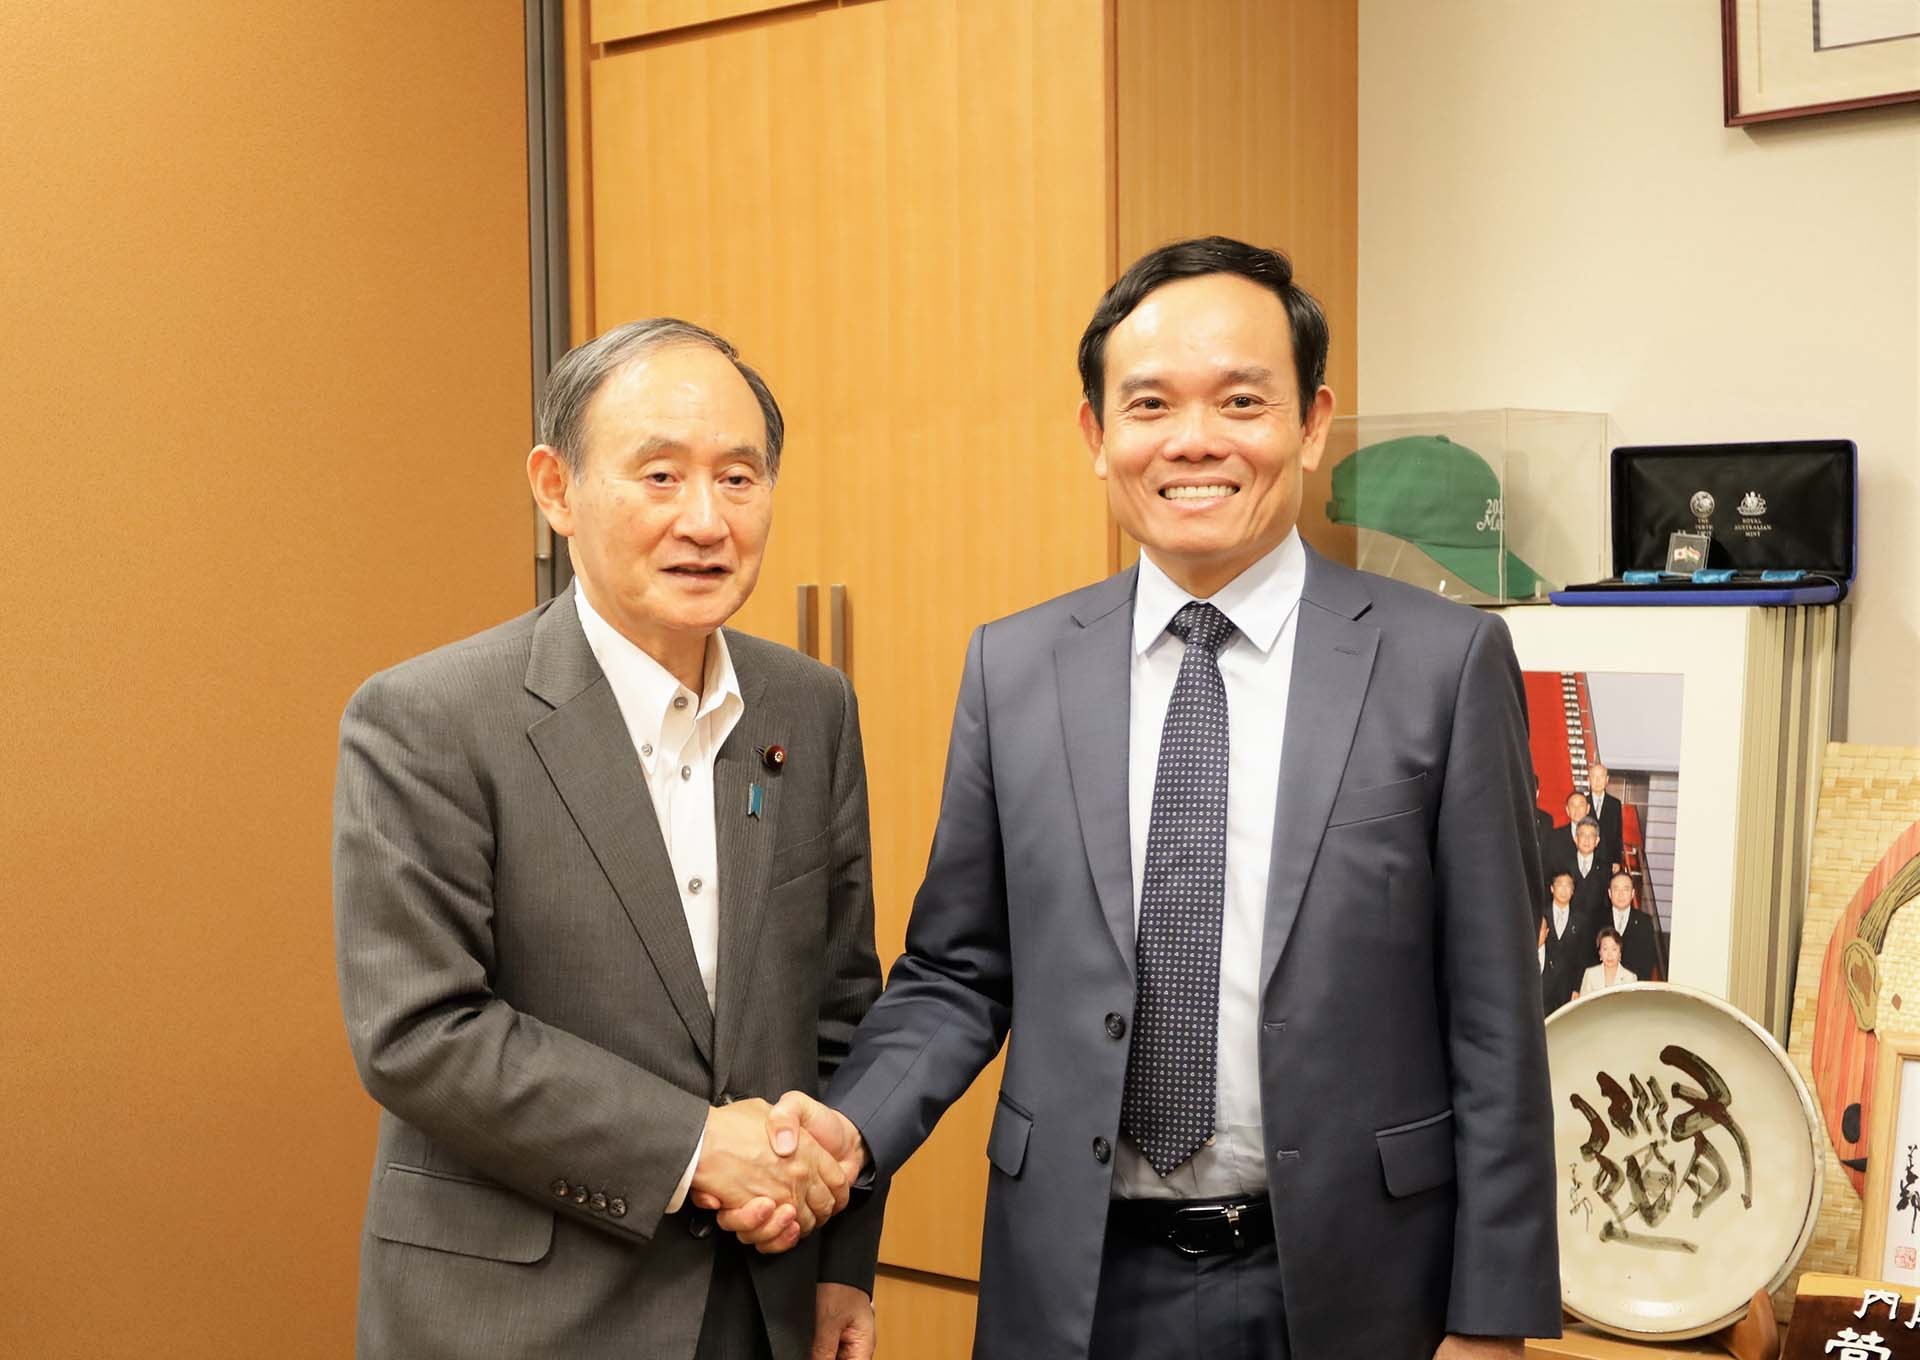 Phó Thủ tướng Trần Lưu Quang thăm làm việc Nhật Bản, dự Hội nghị Tương lai châu Á